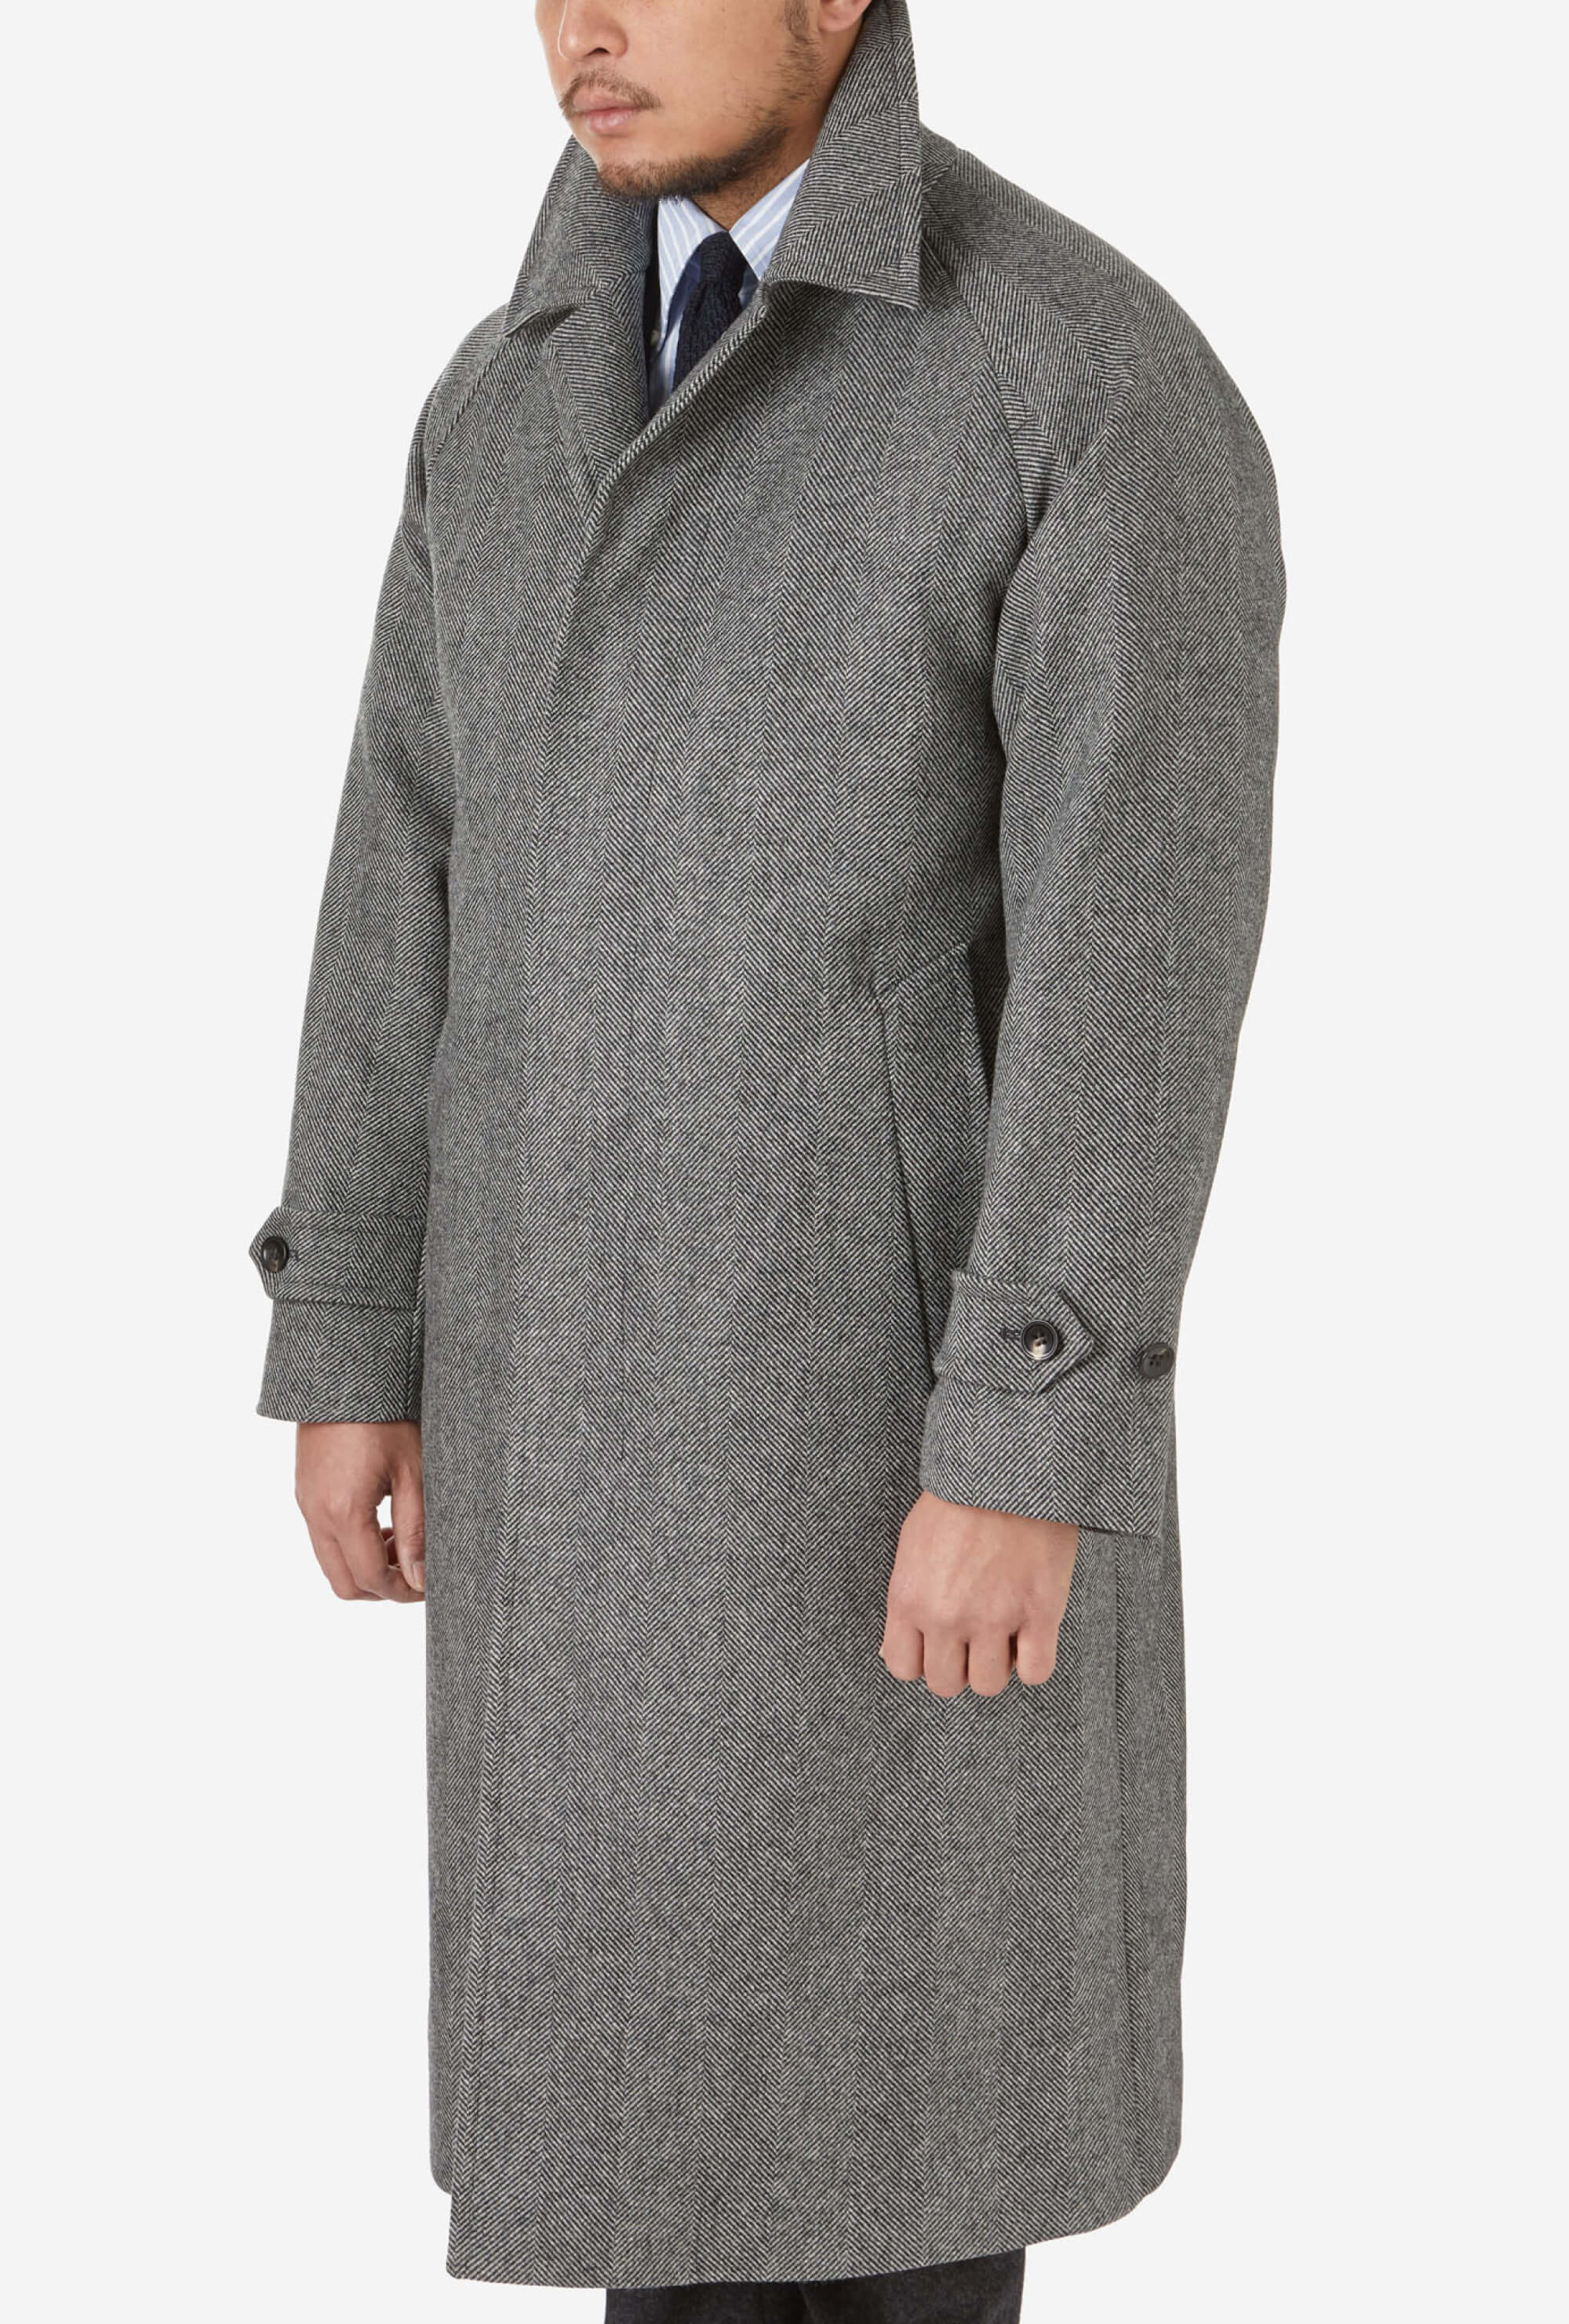 Raglan Sleeve Overcoat Wool Grey Herringbone